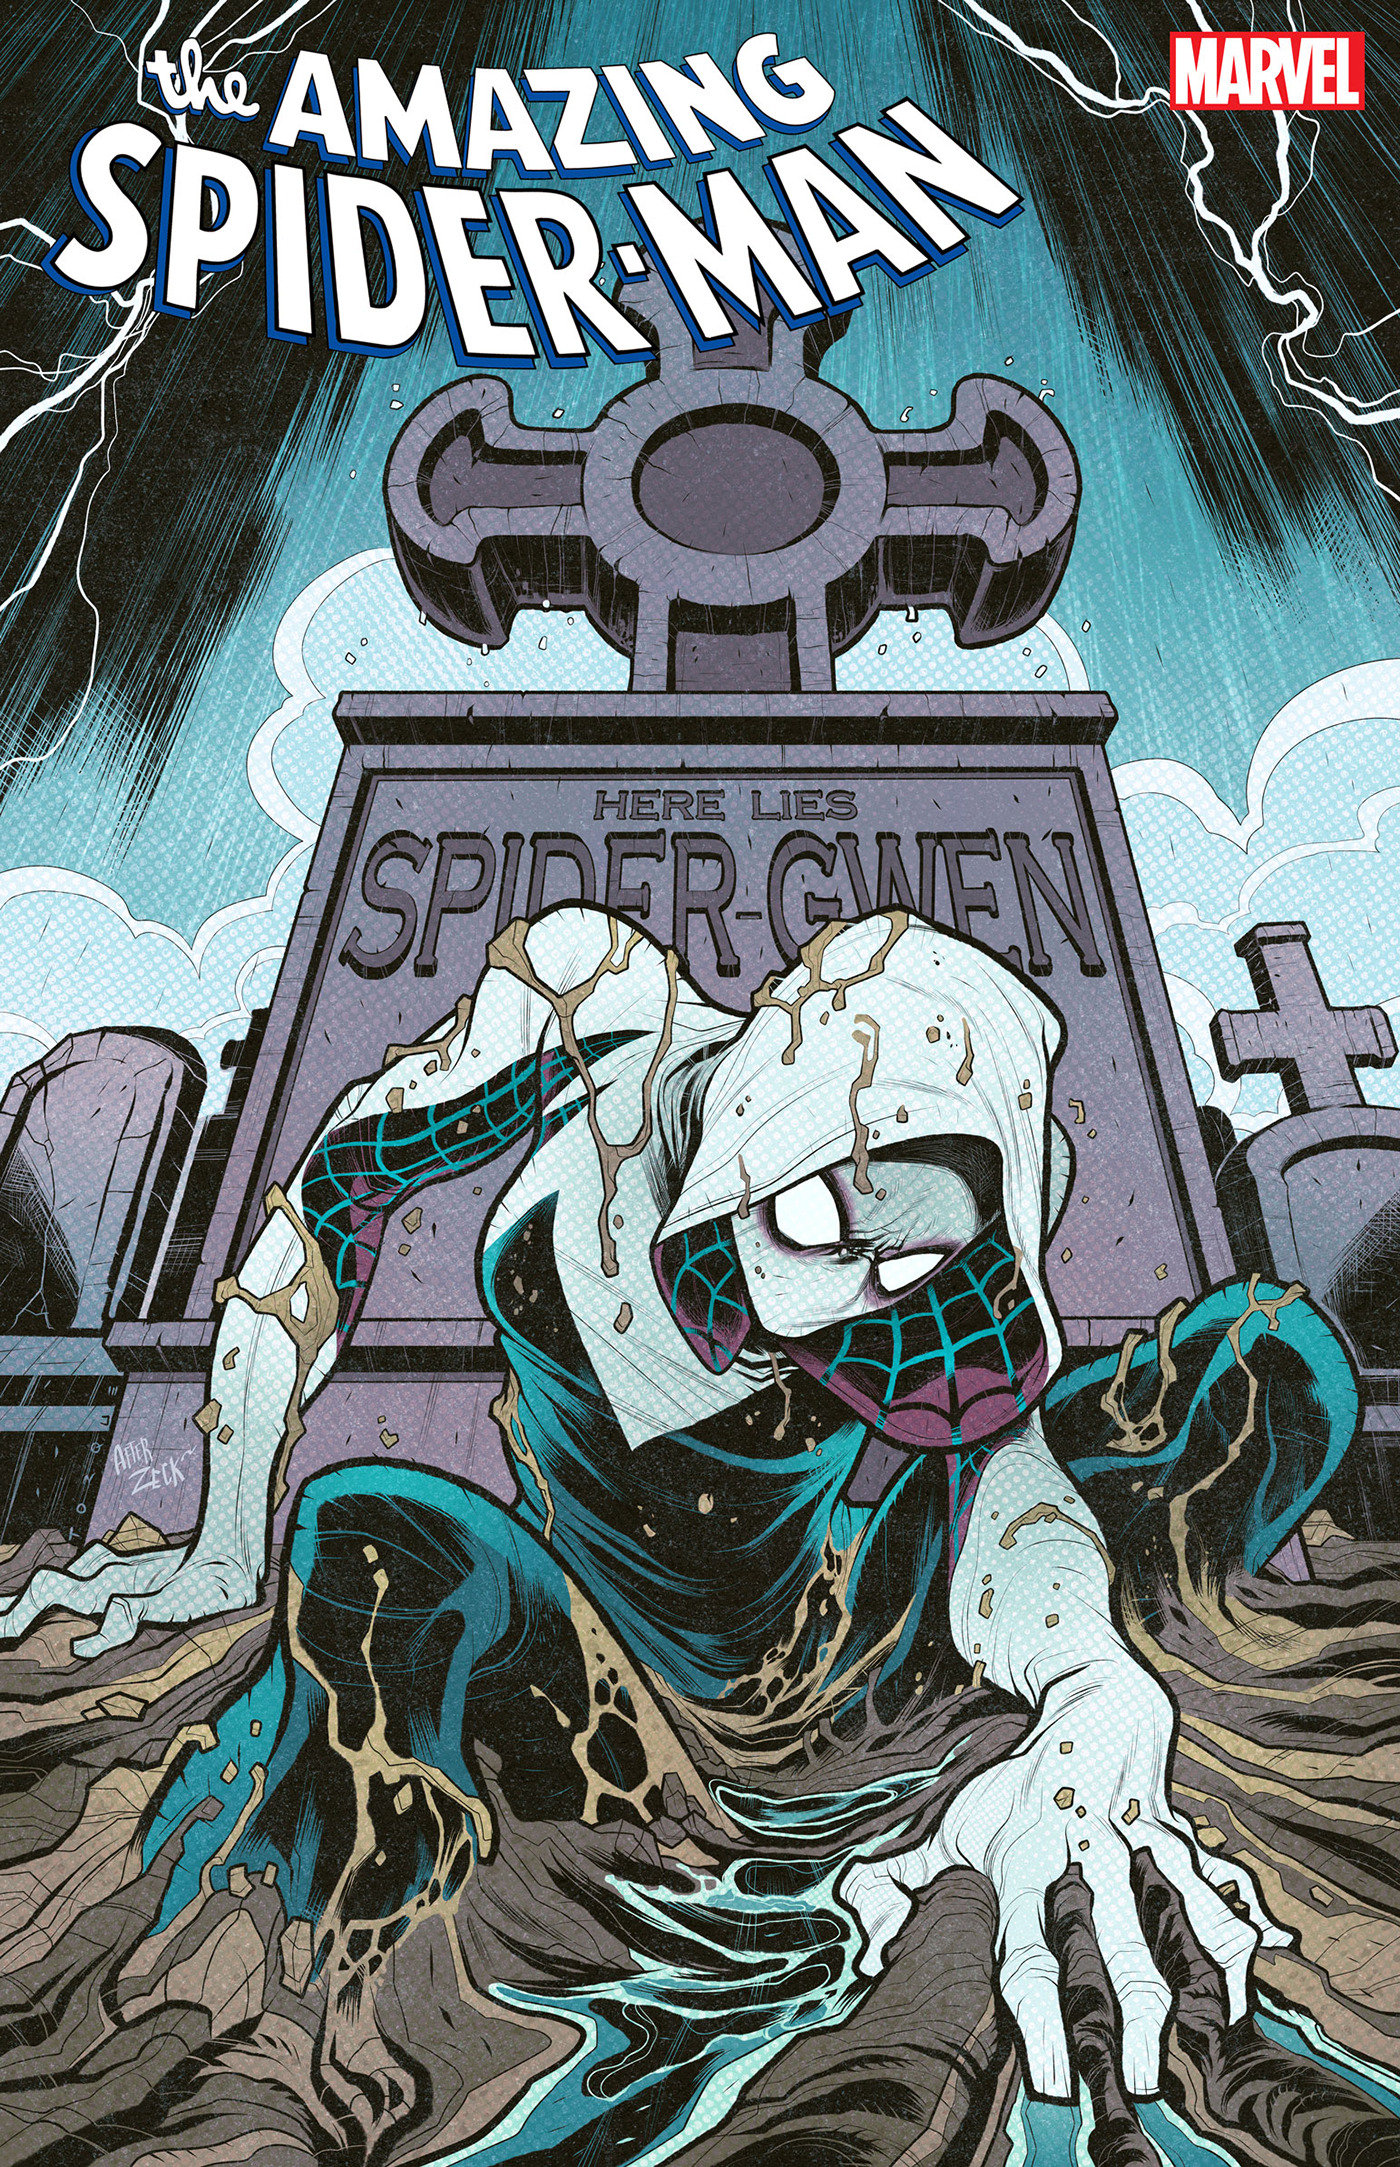 Amazing Spider-Man #32 1 for 50 Incentive Elizabeth Torque Homage Variant [Gods]